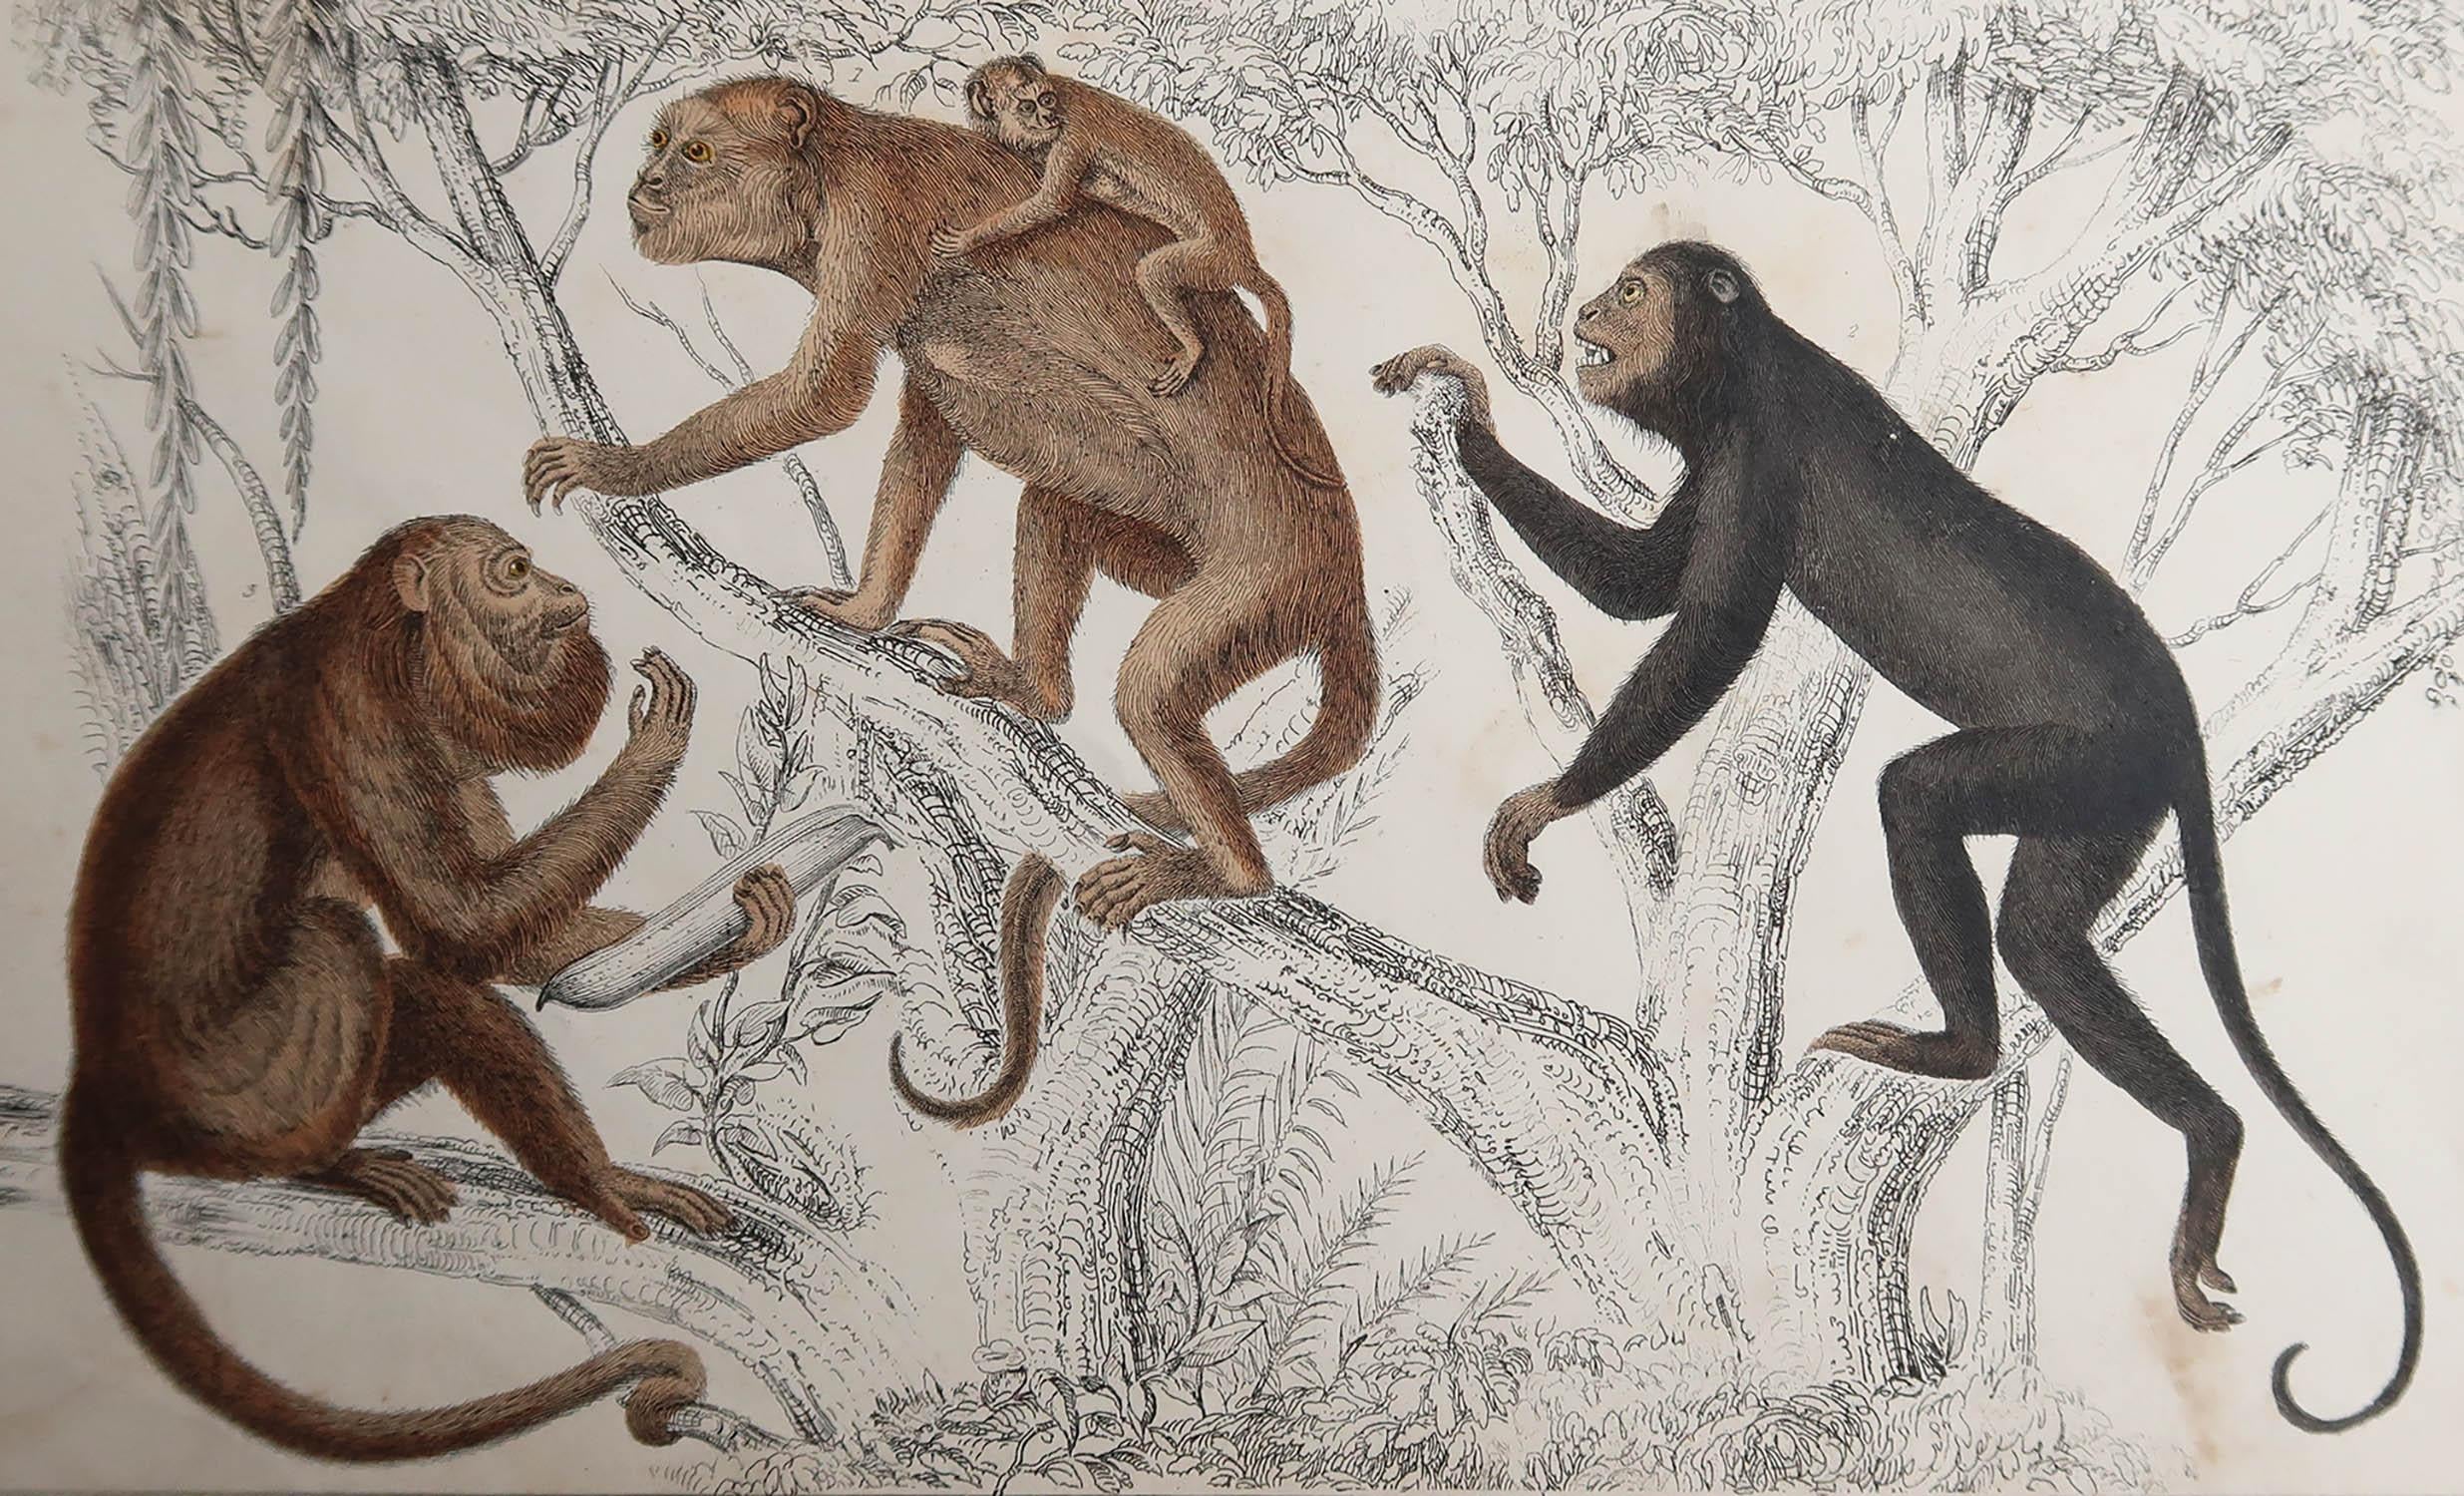 Tolles Bild von Affen.

Ungerahmt. So haben Sie die Möglichkeit, Ihre eigene Auswahl an Rahmen zu treffen.

Lithographie nach Cpt. Brown mit Original-Handkolorit.

Veröffentlicht, 1847.








